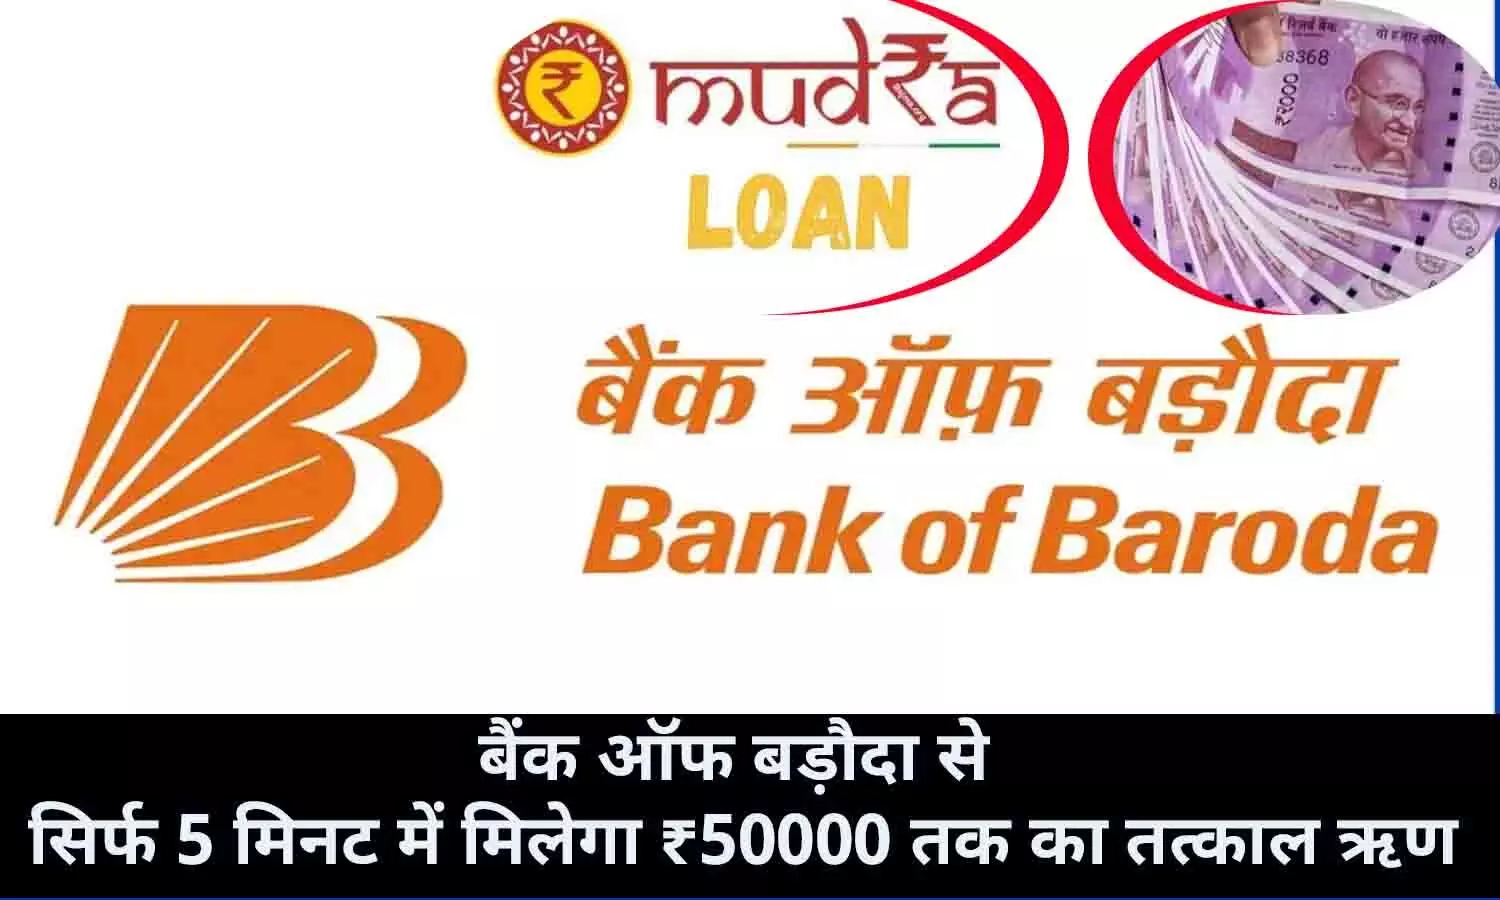 Bank of Baroda se E mudra Loan Kaise Le 2022: लाखो लोगो को सिर्फ 5 मिनट में मिला ₹50000 तक का तत्काल ऋण, फटाफट आप भी उठाए फायदा